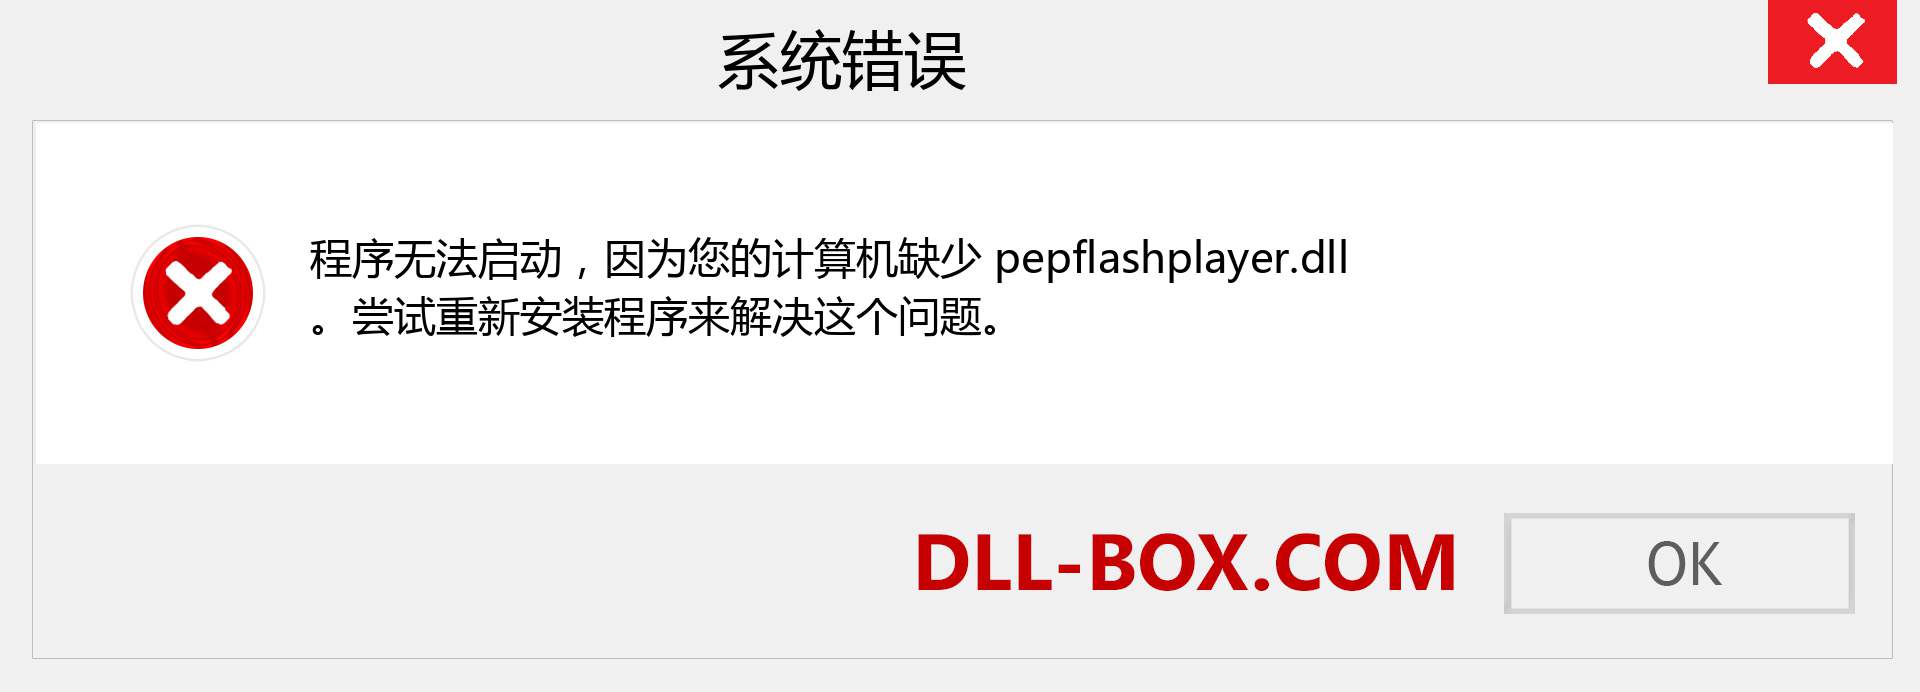 pepflashplayer.dll 文件丢失？。 适用于 Windows 7、8、10 的下载 - 修复 Windows、照片、图像上的 pepflashplayer dll 丢失错误